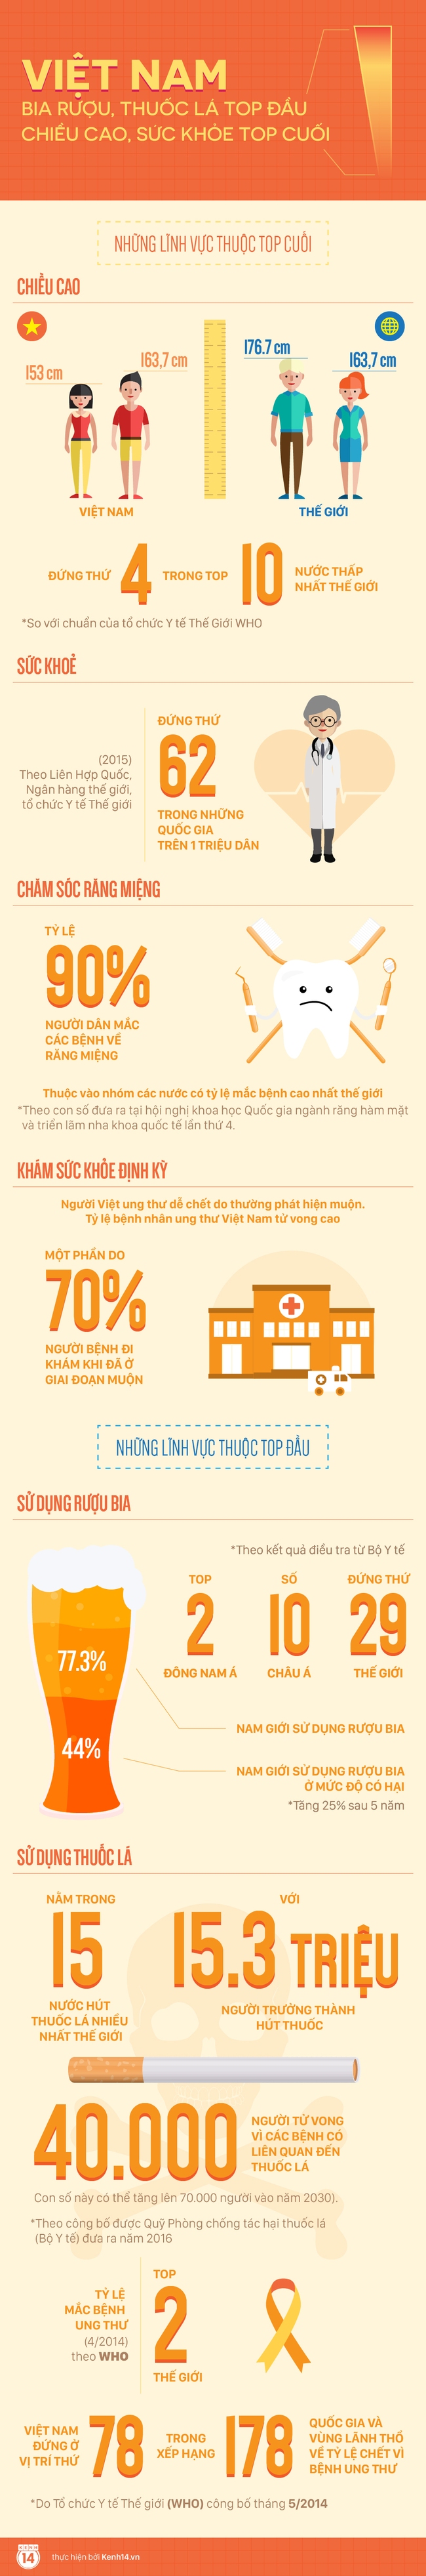 Người Việt Nam so với thế giới: Bia rượu, thuốc lá top đầu; Chiều cao, sức khỏe top cuối - Ảnh 1.